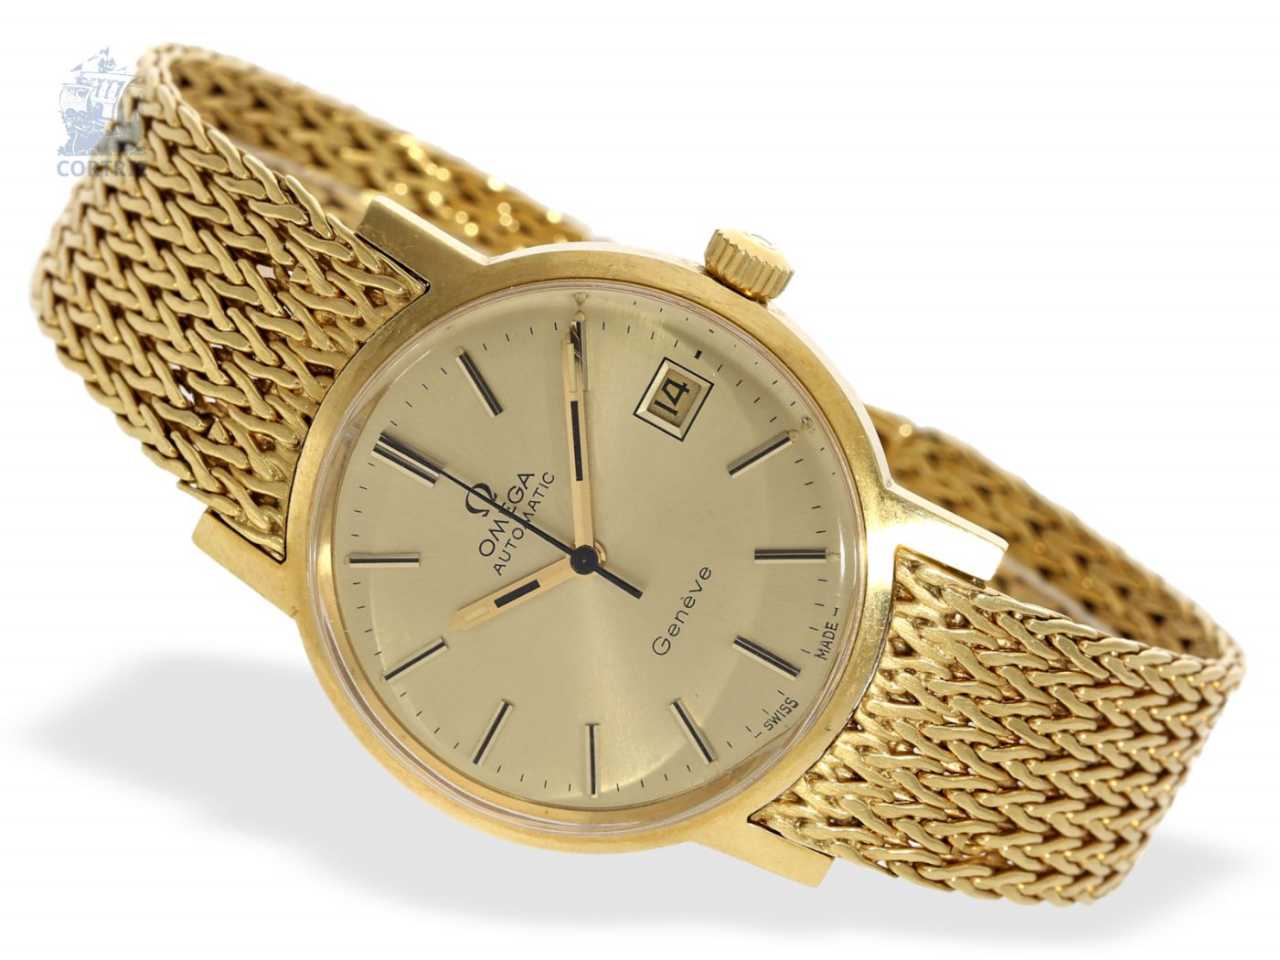 Часы Geneva мужские золотые 585. Золотые часы Голд тайм модель 8020. Золотые часы Голд тайм мужские. Тиссот золотые.